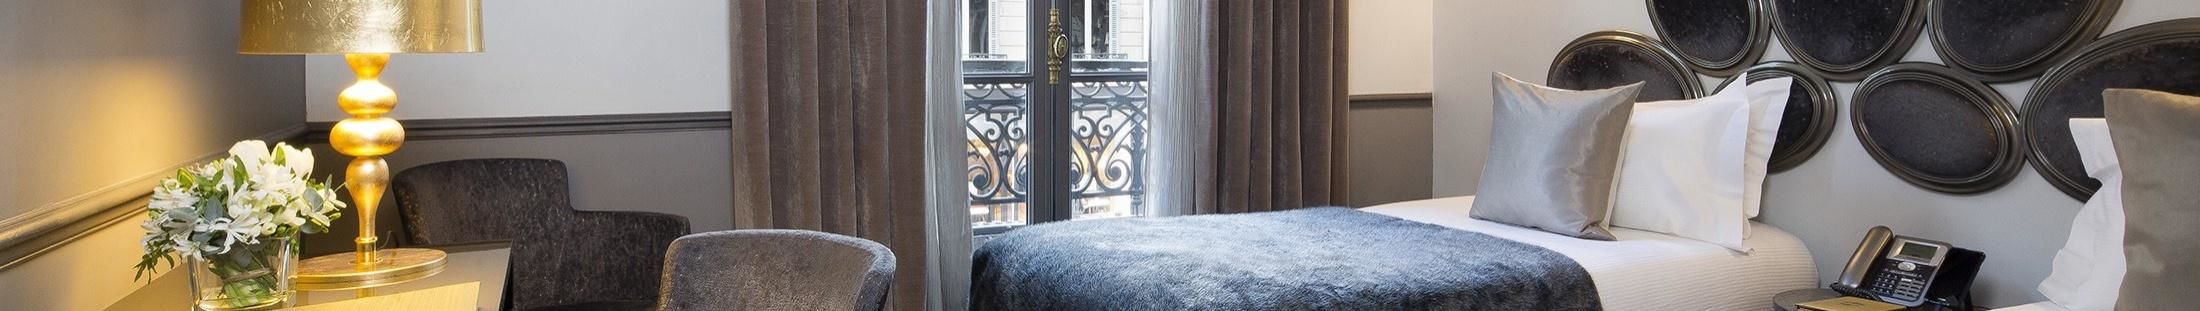 勒芒巴黎卢浮宫酒店 - 房间